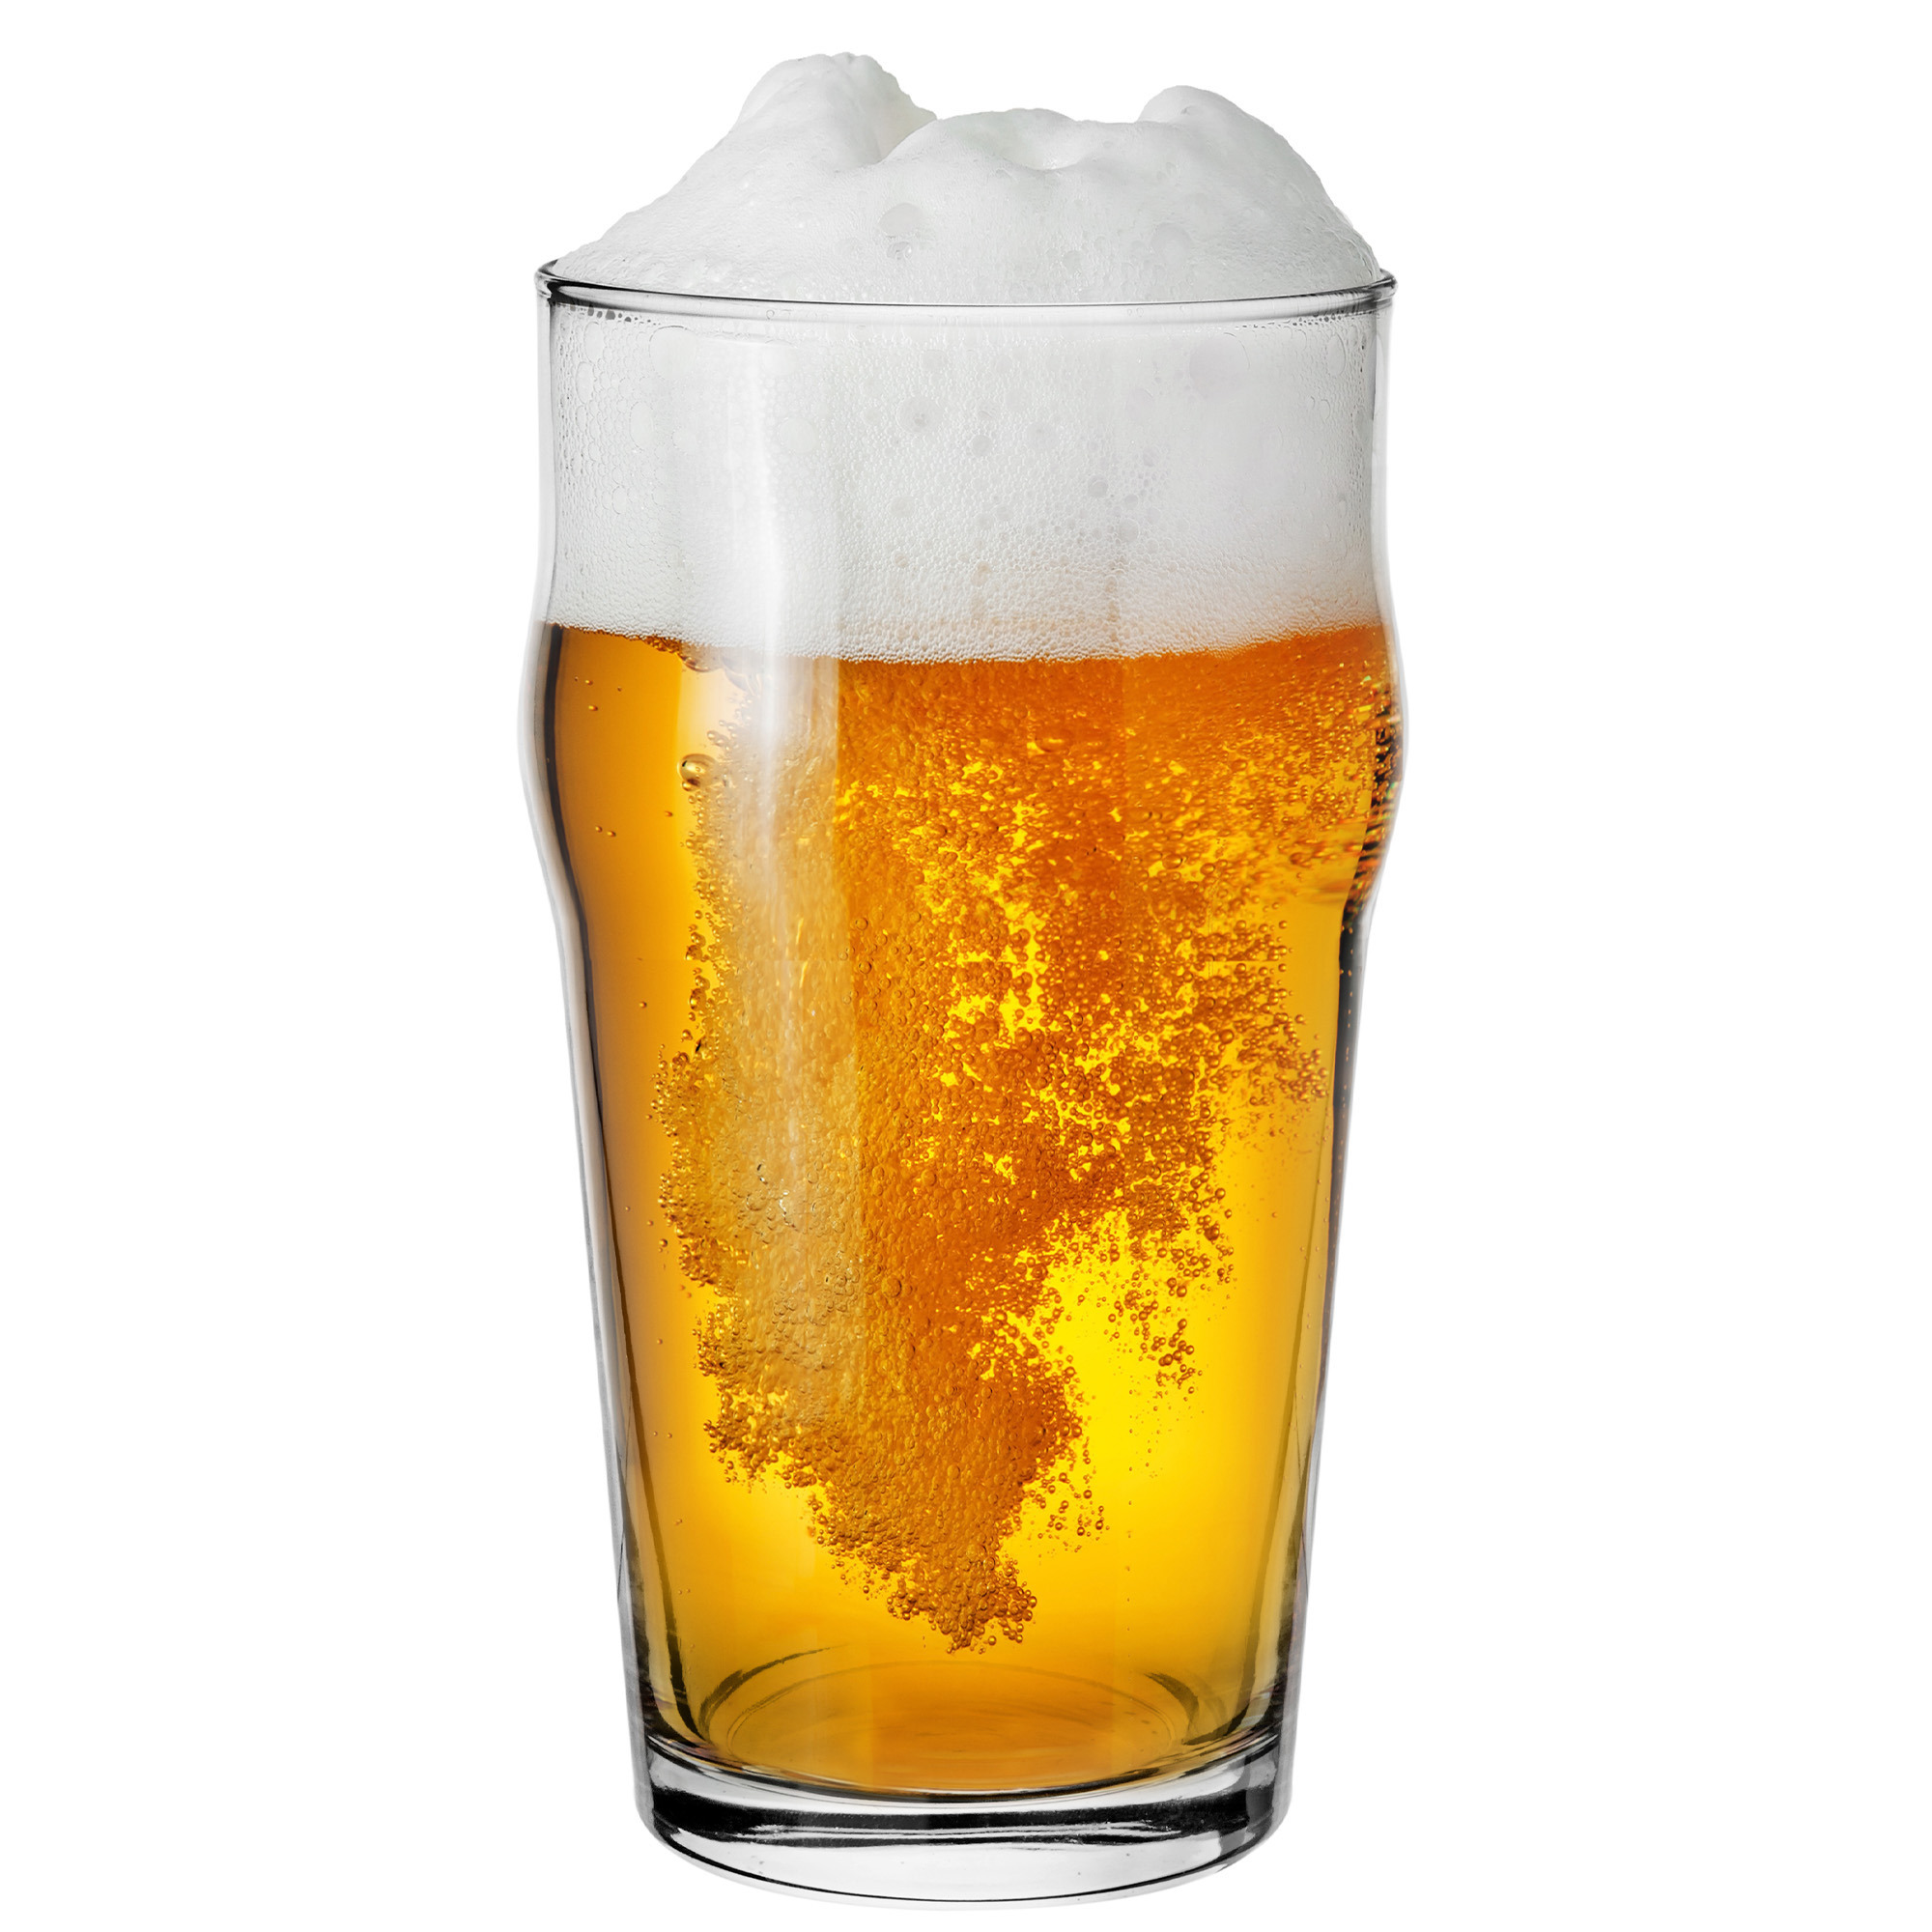 Glasmark Bierglazen - 6x - pils glas - 530 ml - glas - speciaal bier -